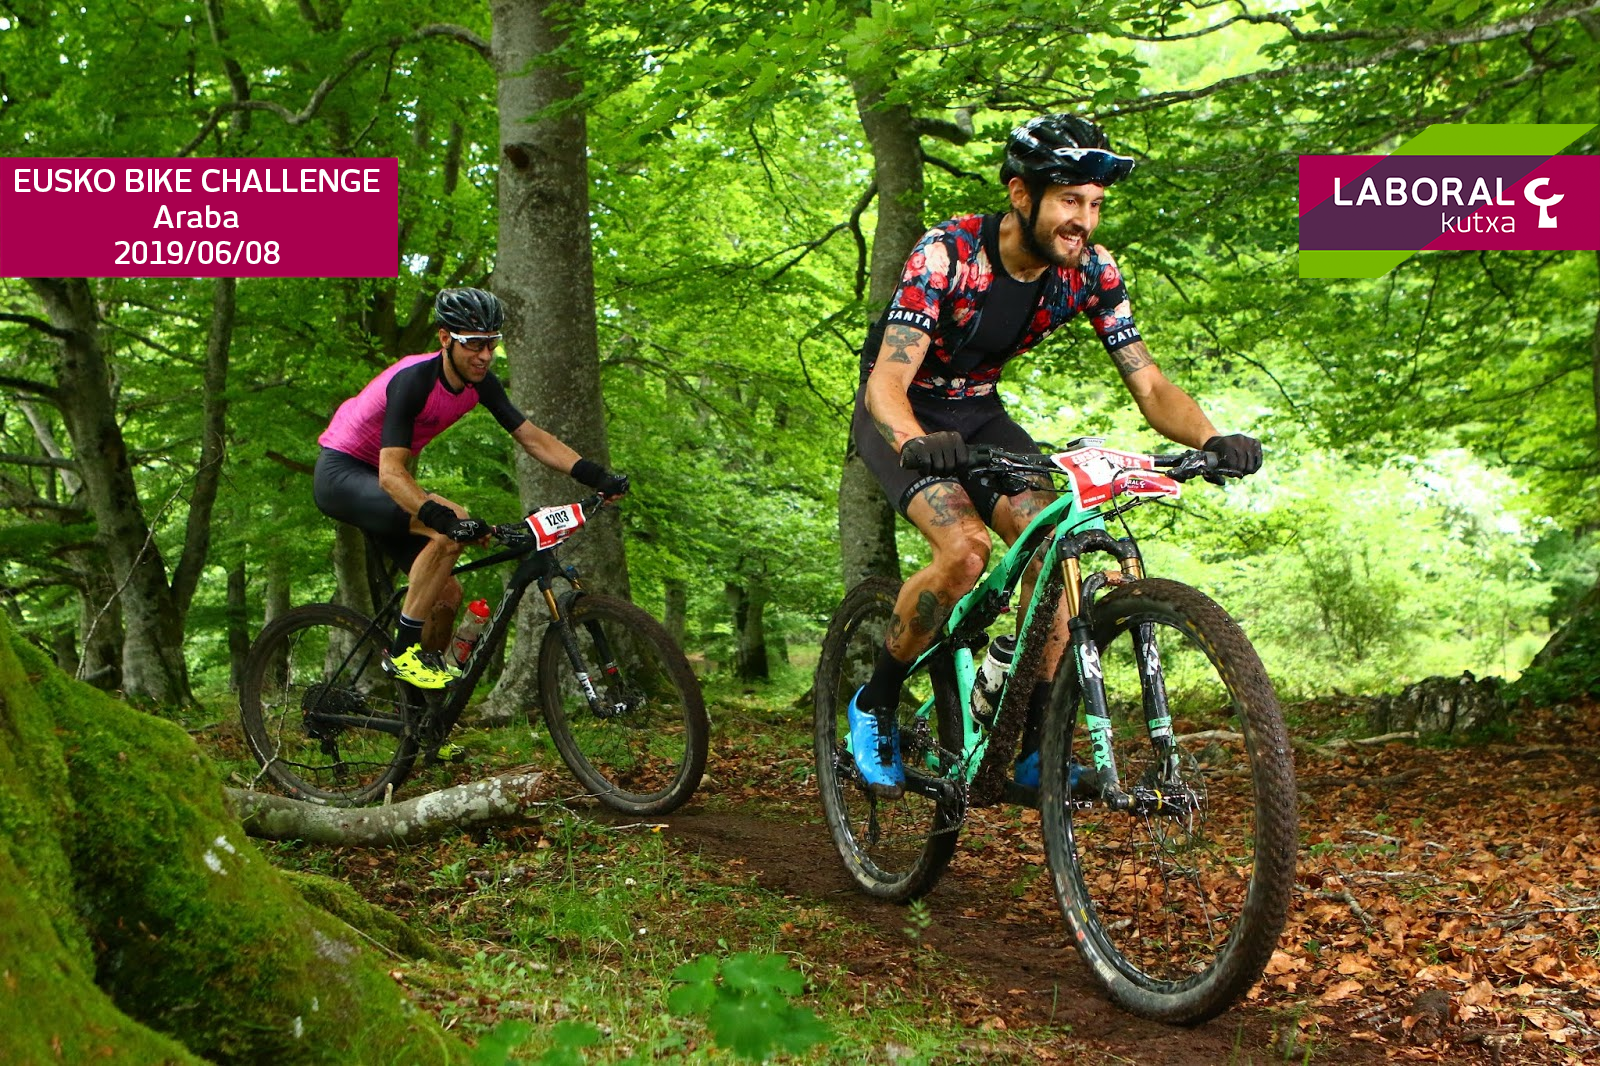 Sorteamos 4 plazas para Eusko Bike Challenge, la Maratón definitiva de Mountain Bike que se celebrará el 8 de junio